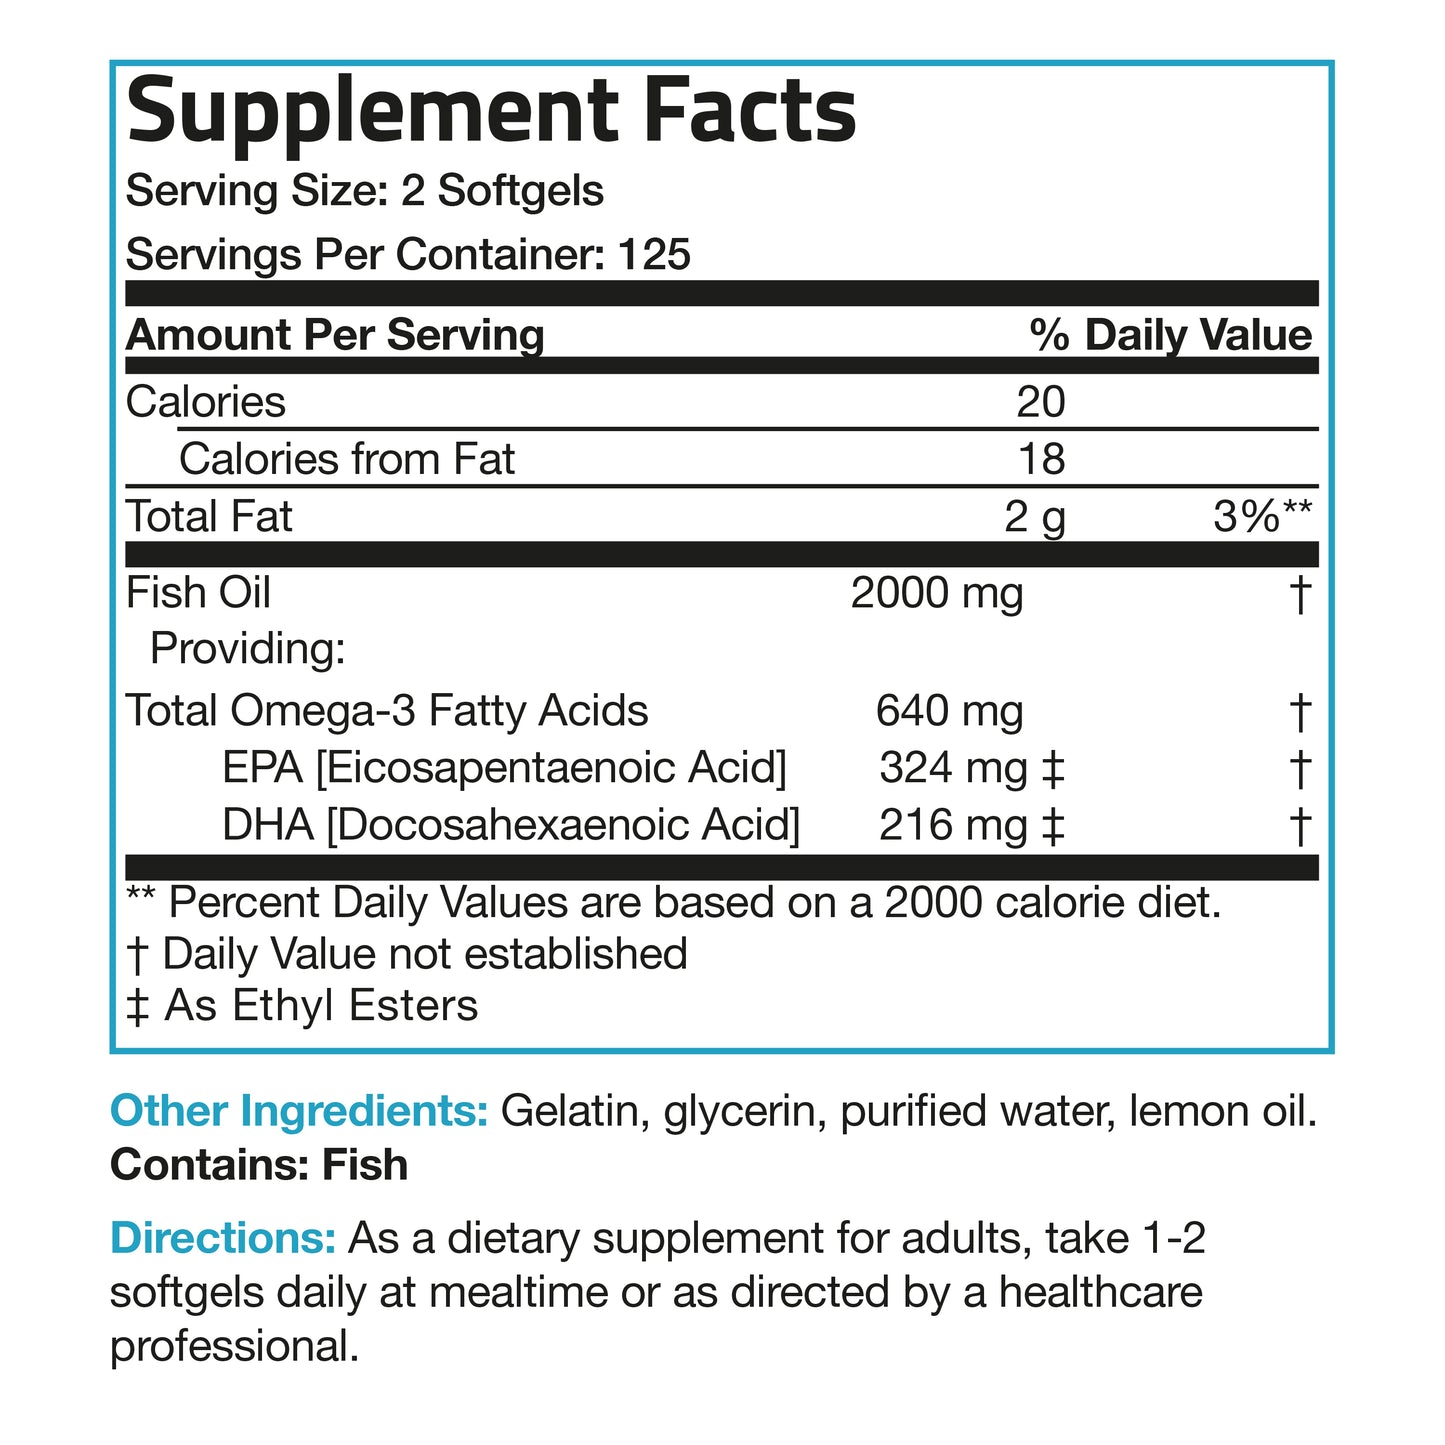 Omega-3 Fish Oil  EPA & DHA - 1,000 mg - 250 Softgels